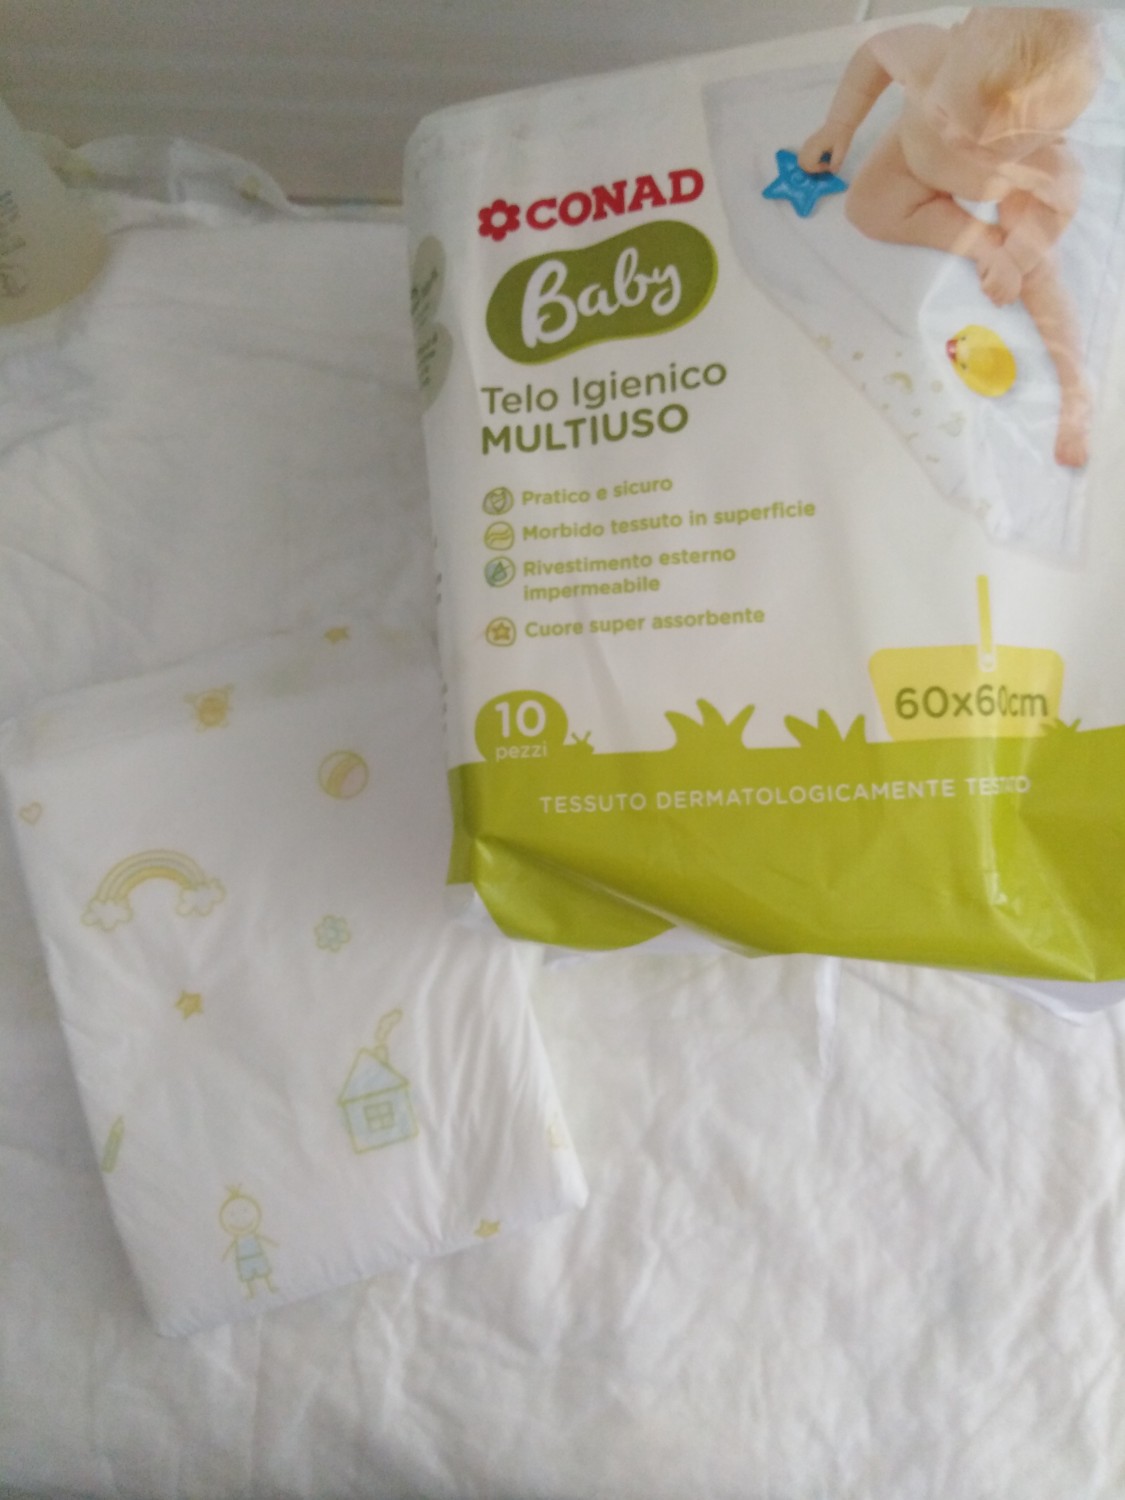 Baby Telo Igienico Multiuso - MammacheTest